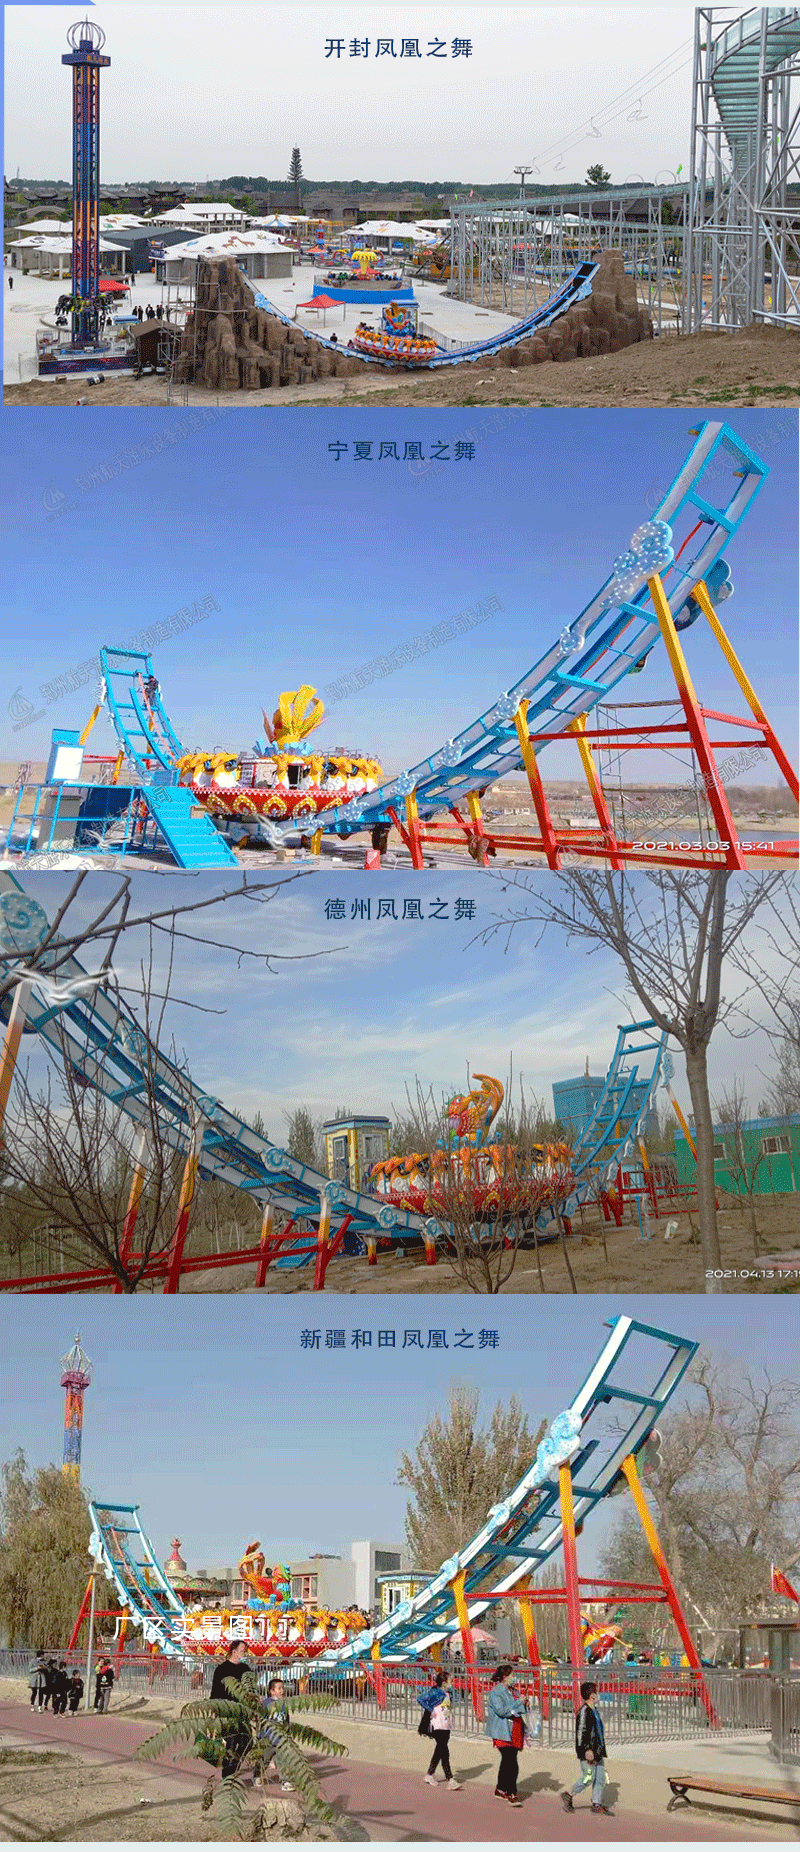 郑州大型大型轨道飞碟游乐园设备航天游乐厂家 4